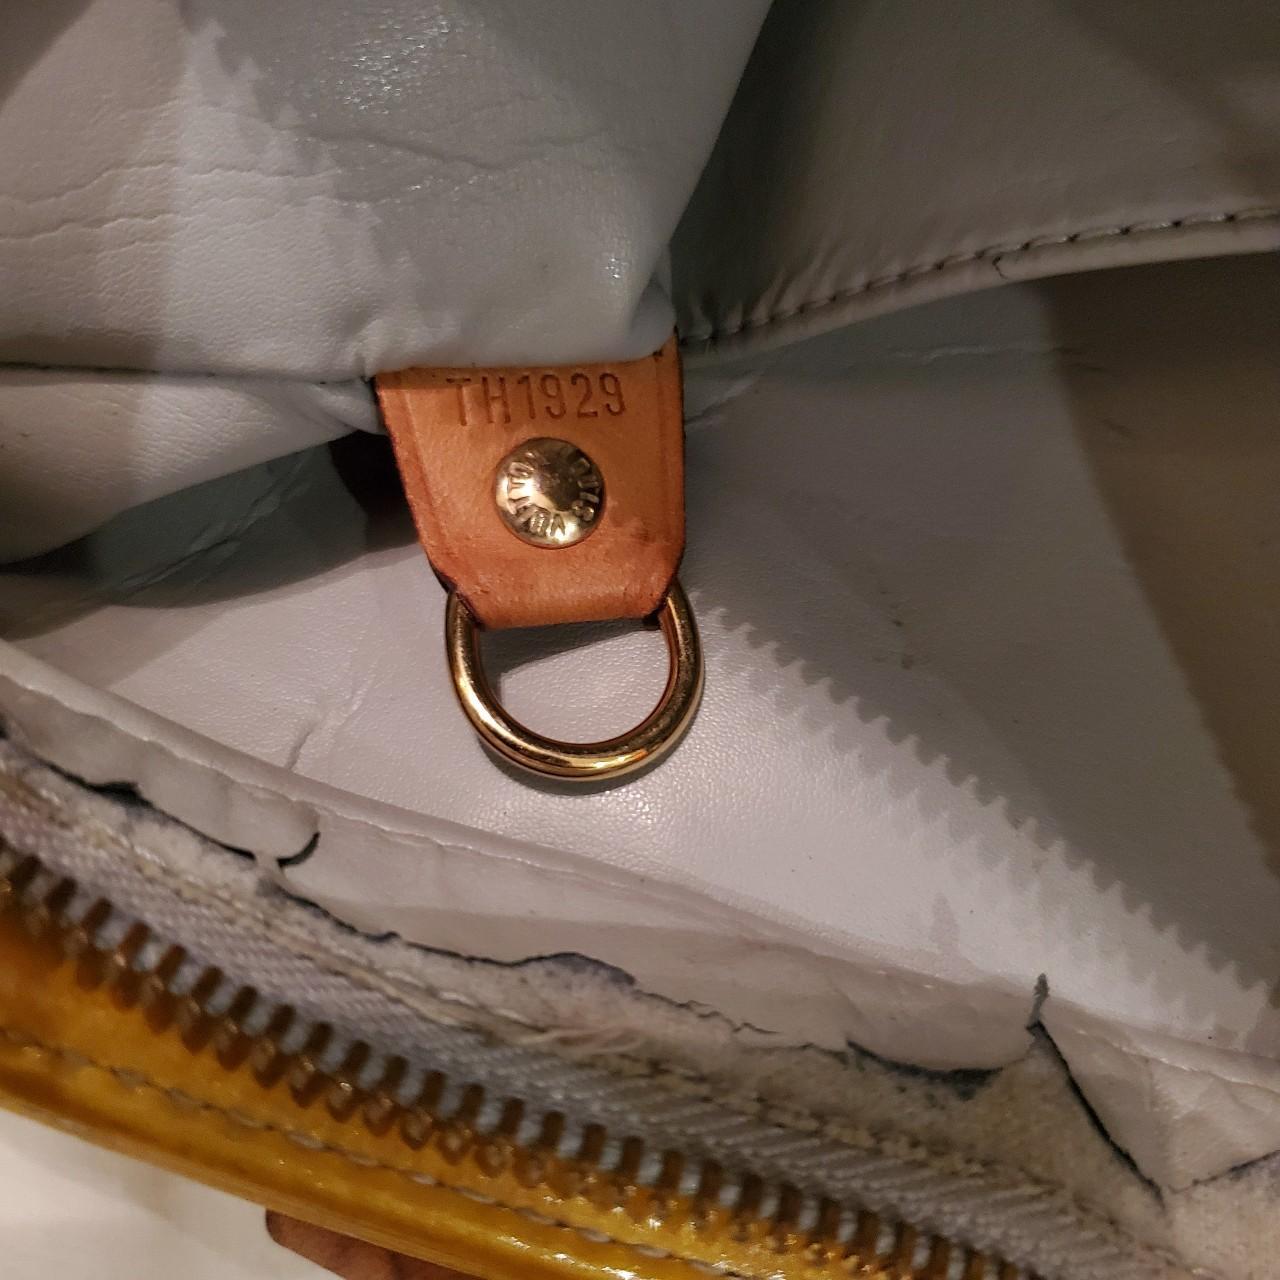 Louis Vuitton Houston Bag #louisvuitton #authentic - Depop